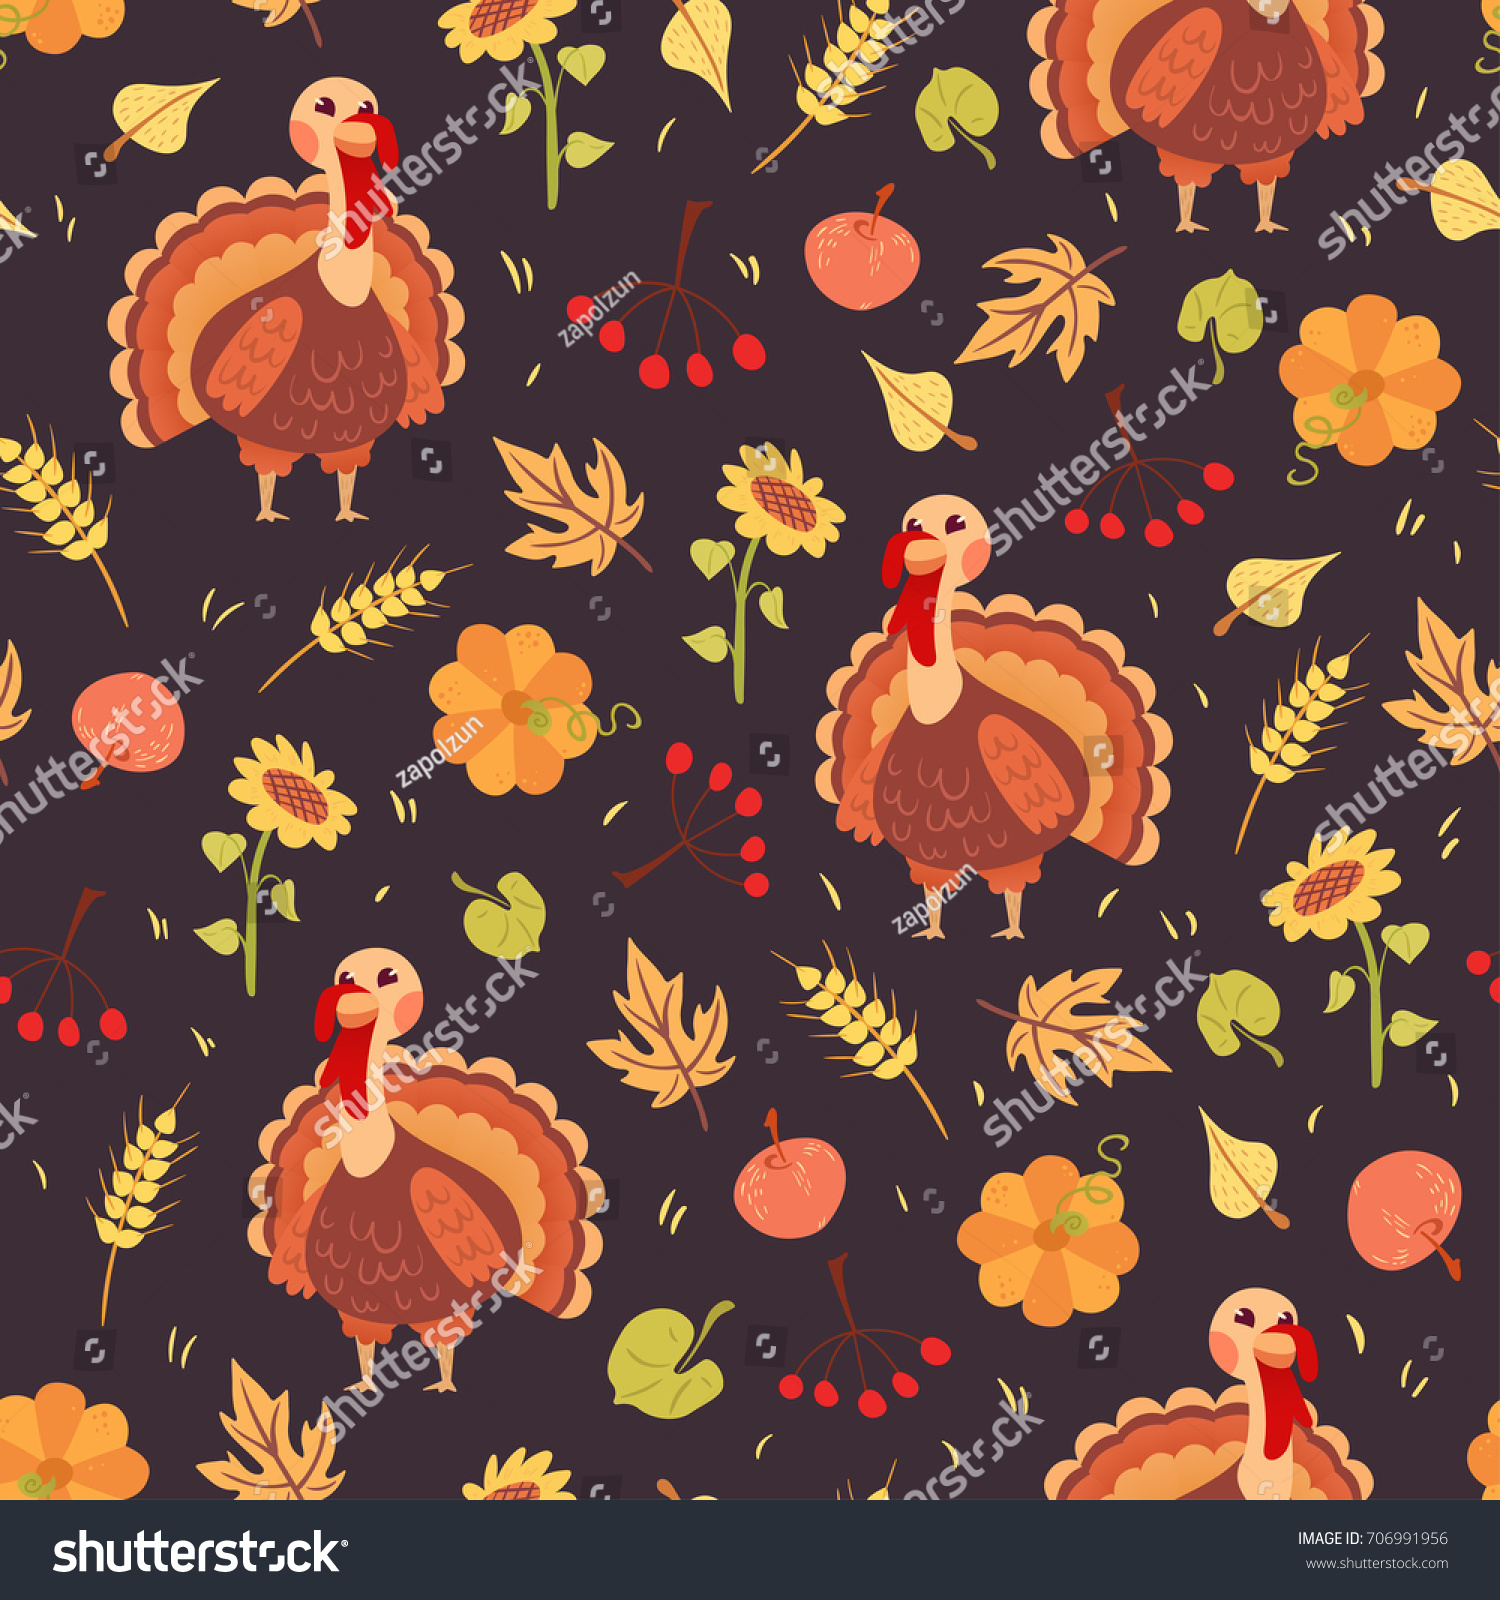 Turkey Bird Seamless Pattern Harvest Autumn Stock Vector (Royalty Free ...